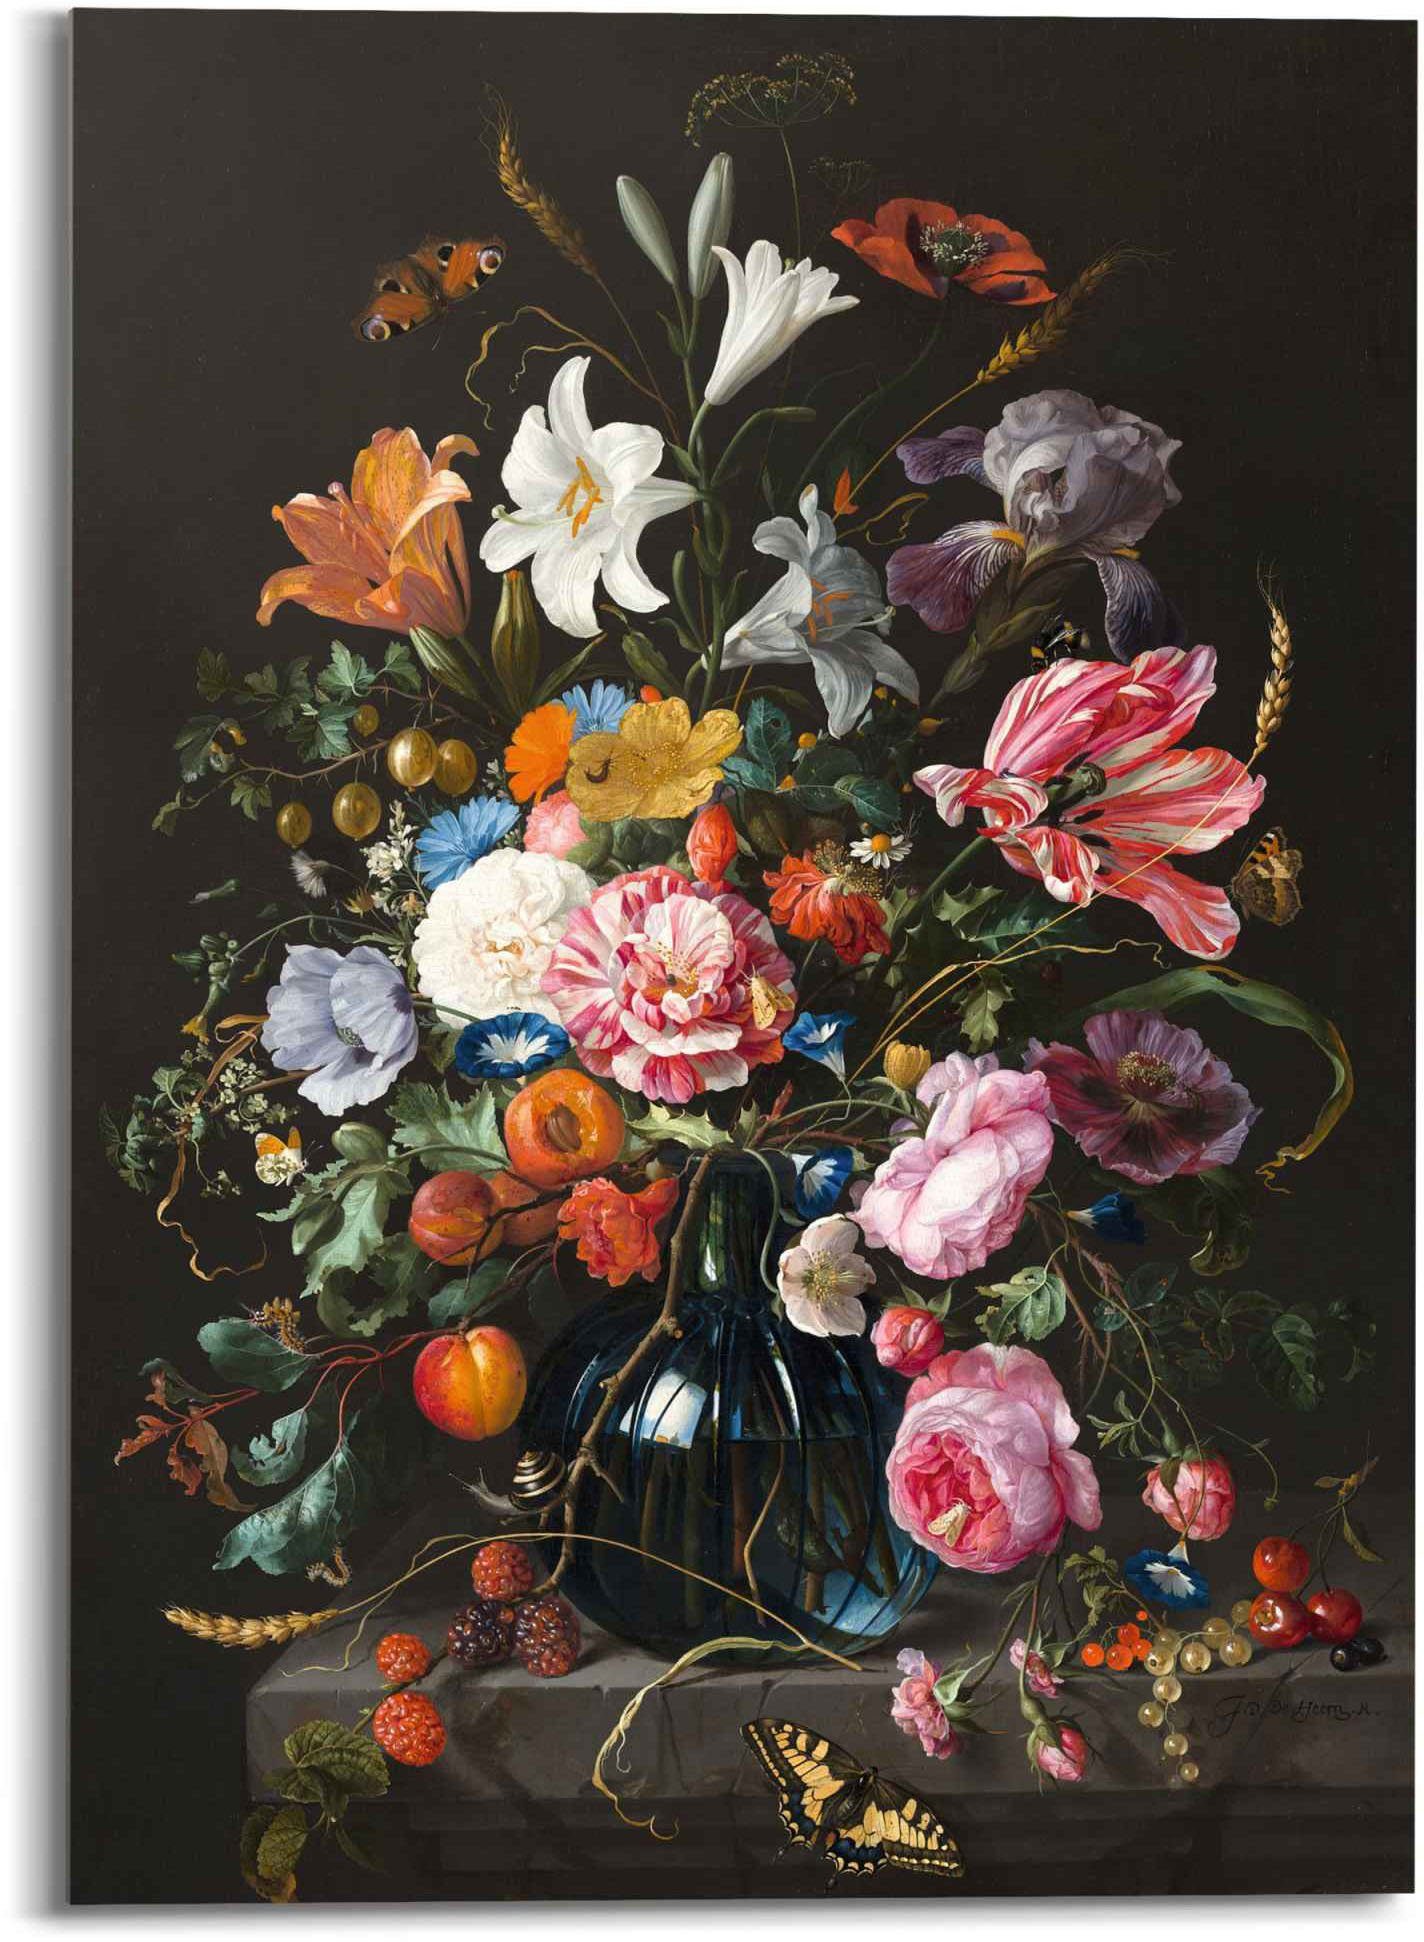 Reinders! Print op glas Artprint op glas stilleven met bloemen Mauritshuis - oude meester - beroemd schilderij, vlinder (1 stuk)